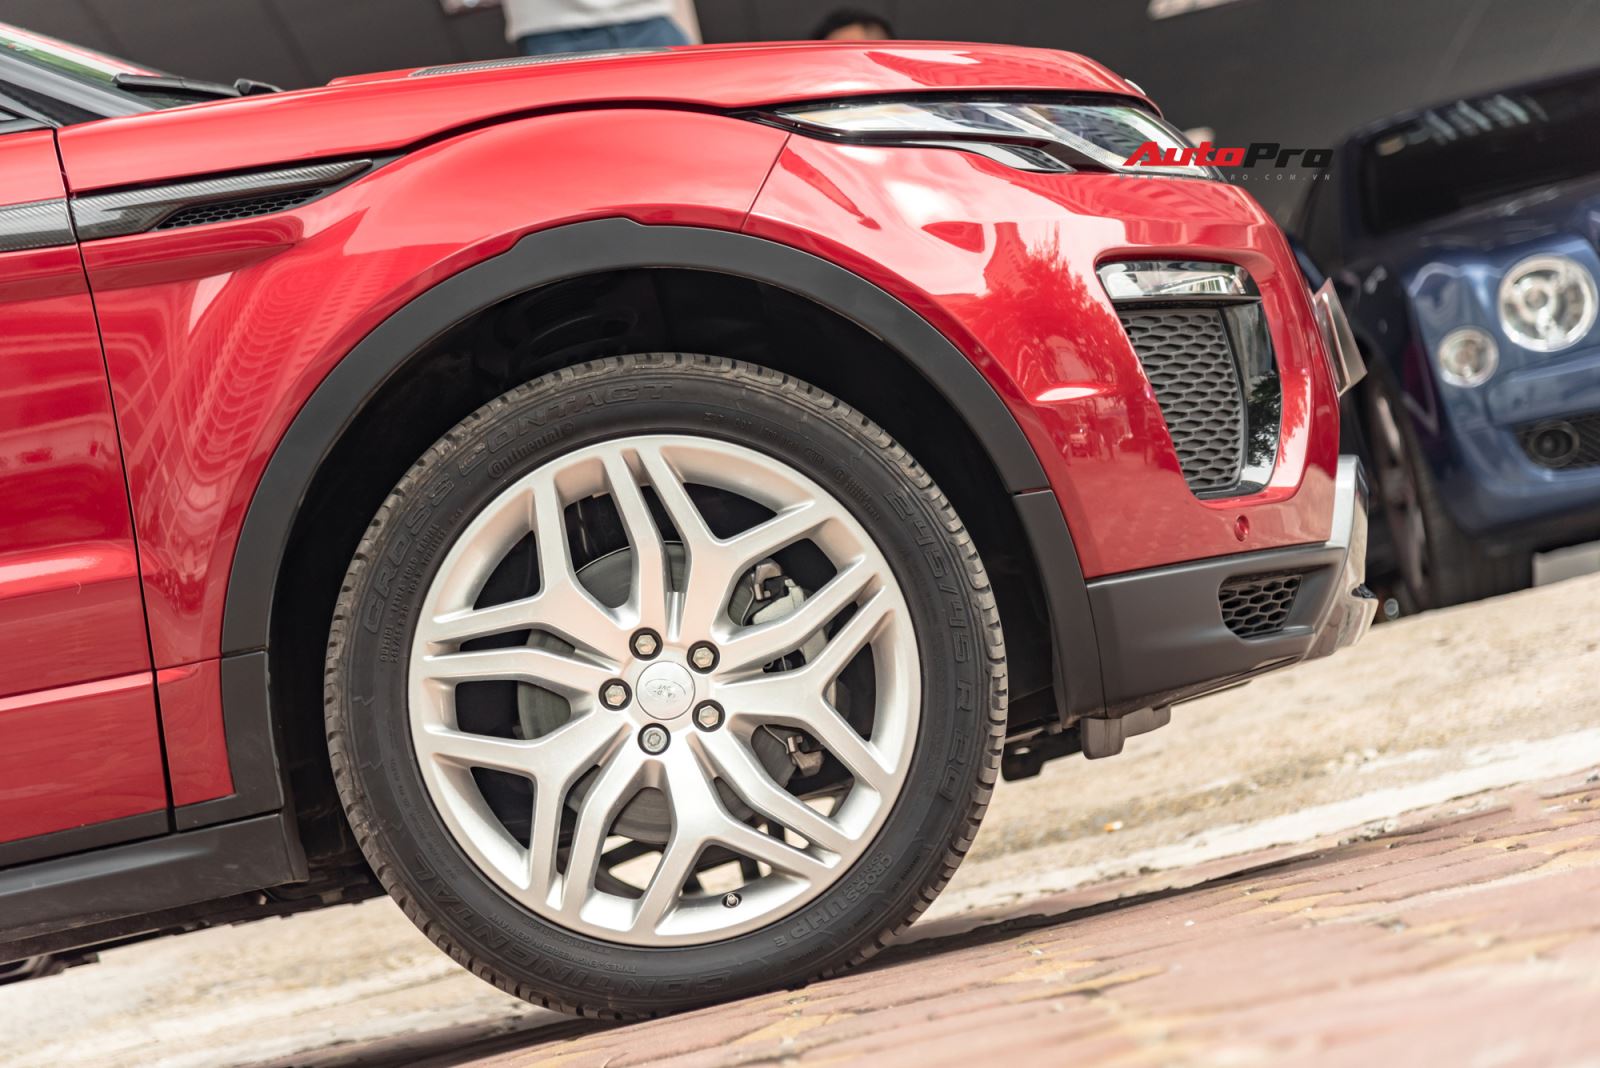 Đại gia Việt bán hàng hiếm Range Rover Evoque mui trần giá gần 4 tỷ đồng 2